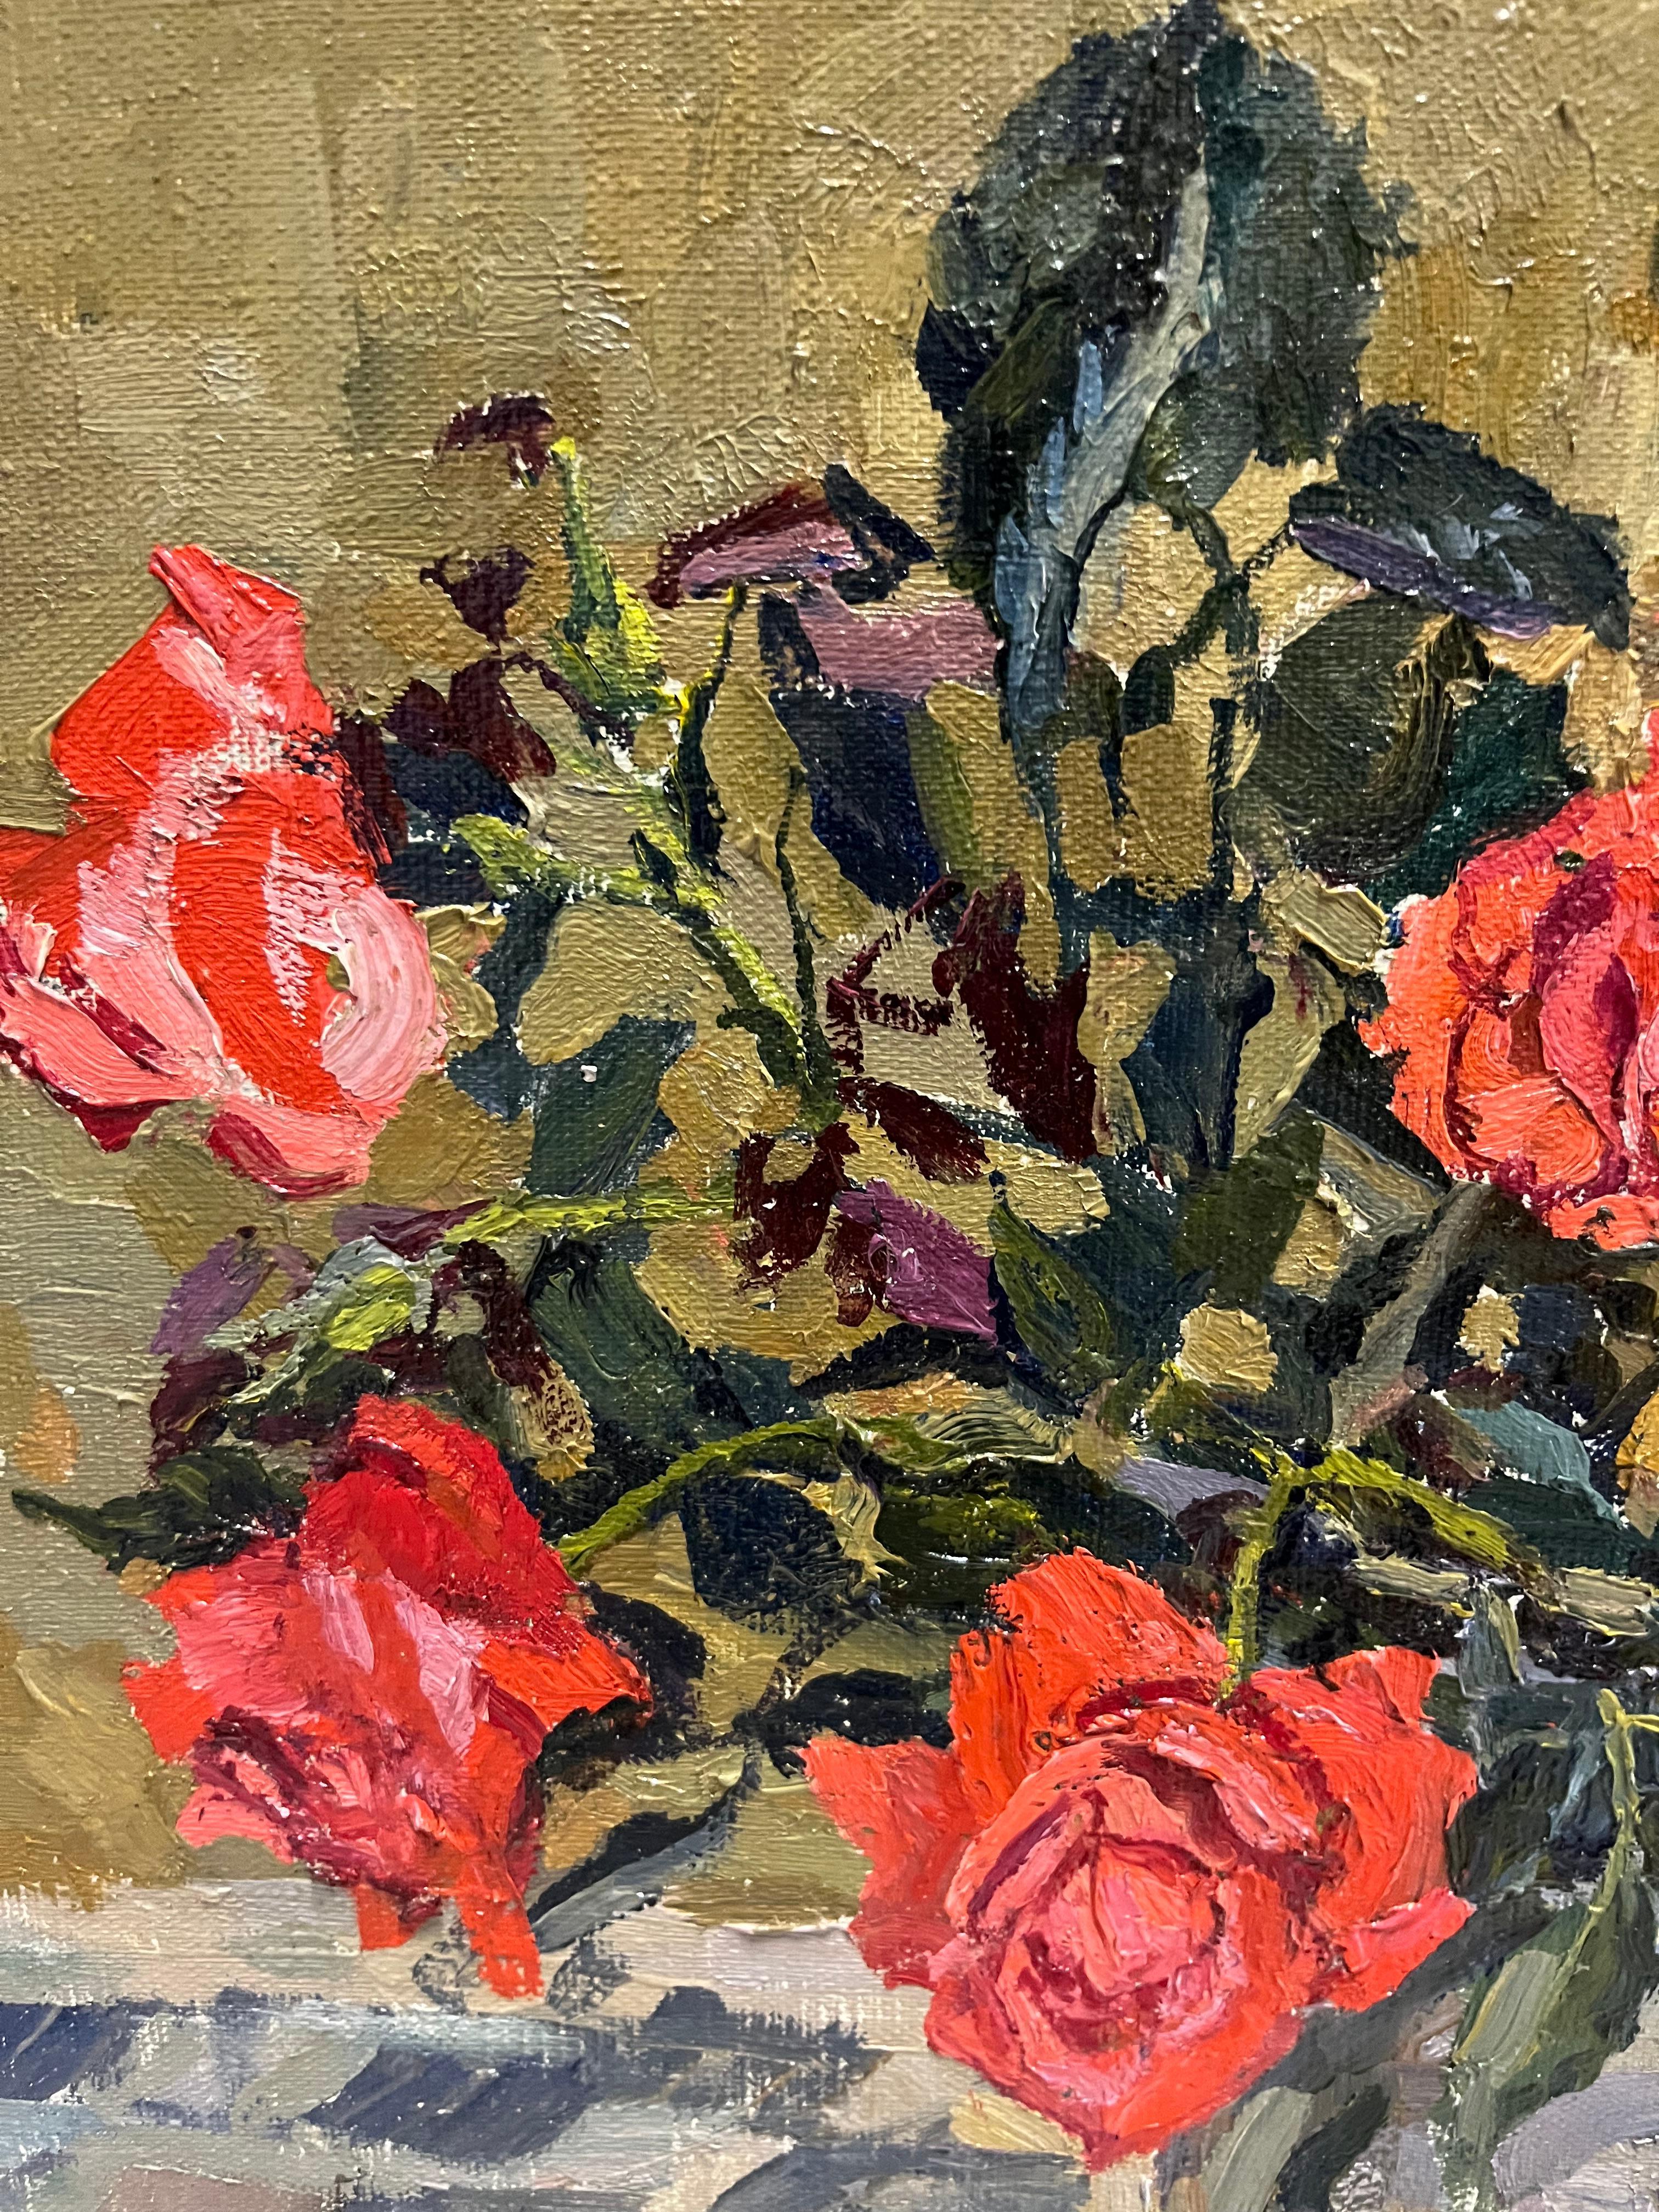 Blumen, Rosen, rot, rosa

MAJA KOPITZESWA    (Gagra, Georgien, 1924 - 2005)

Die Werke von Maya Kopitzeva wurden vom russischen Kulturministerium, von der Stiftung für die russische Kultur und von verschiedenen Sammlern in Europa, Japan und den